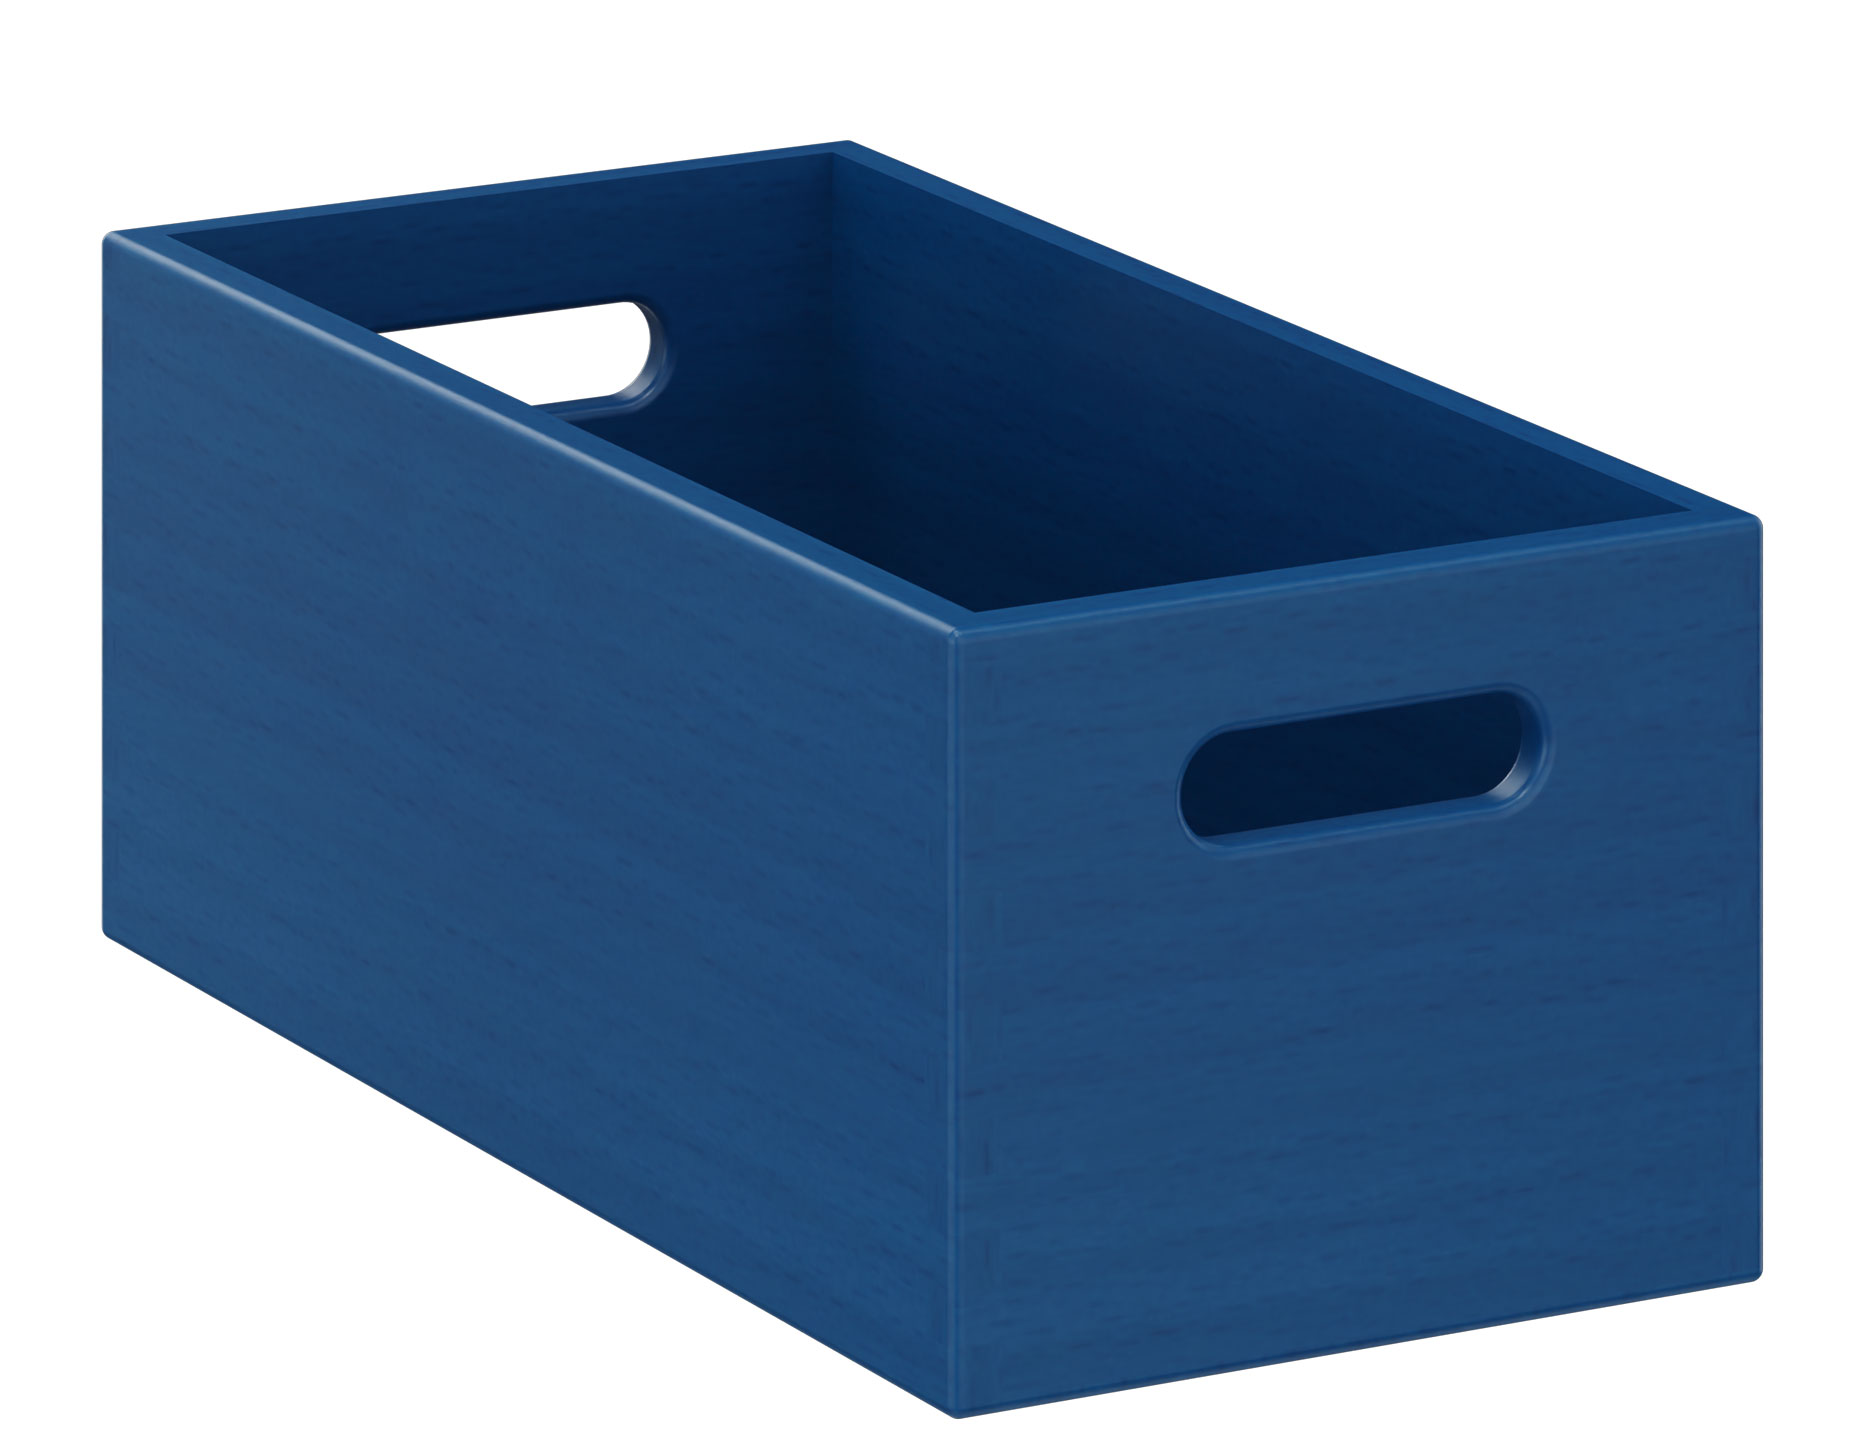 Materialkasten schmal, 14 cm hoch blau